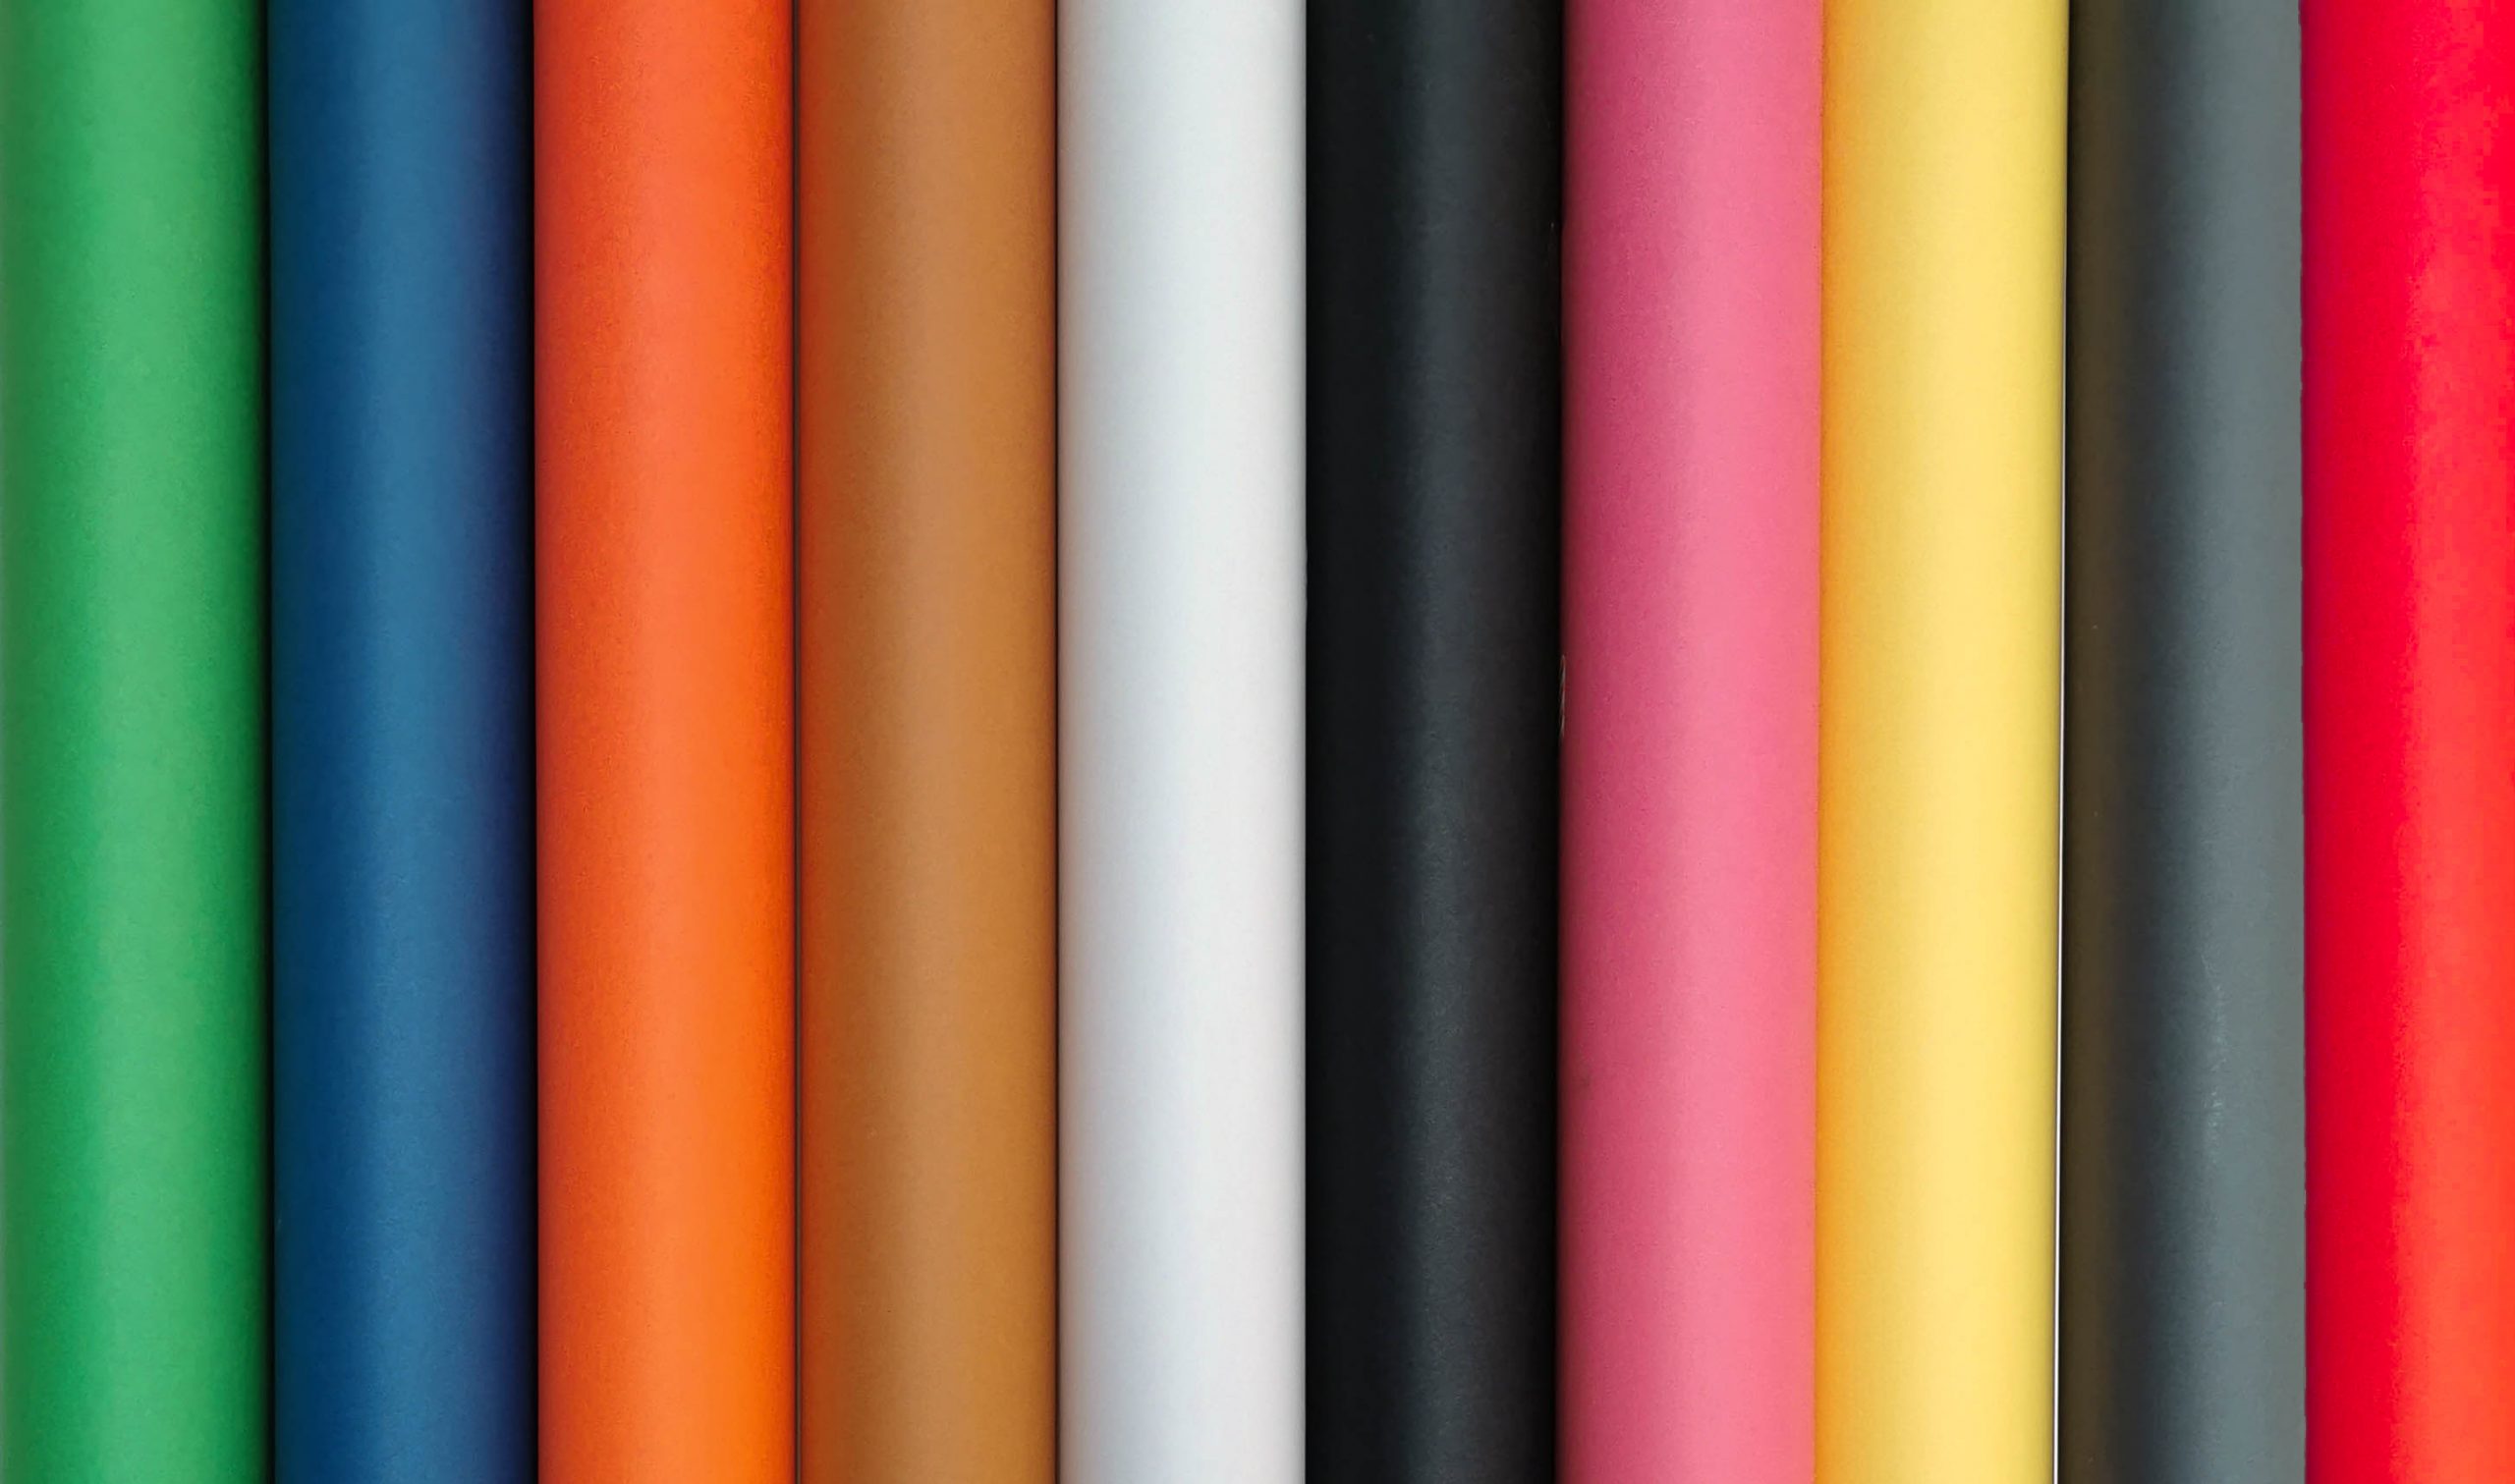 Papierowe tła fotograficzne: zielony, niebieski, pomarańczowy, brązowy, biały, czarny, różowy, żółty, szary, czerwony